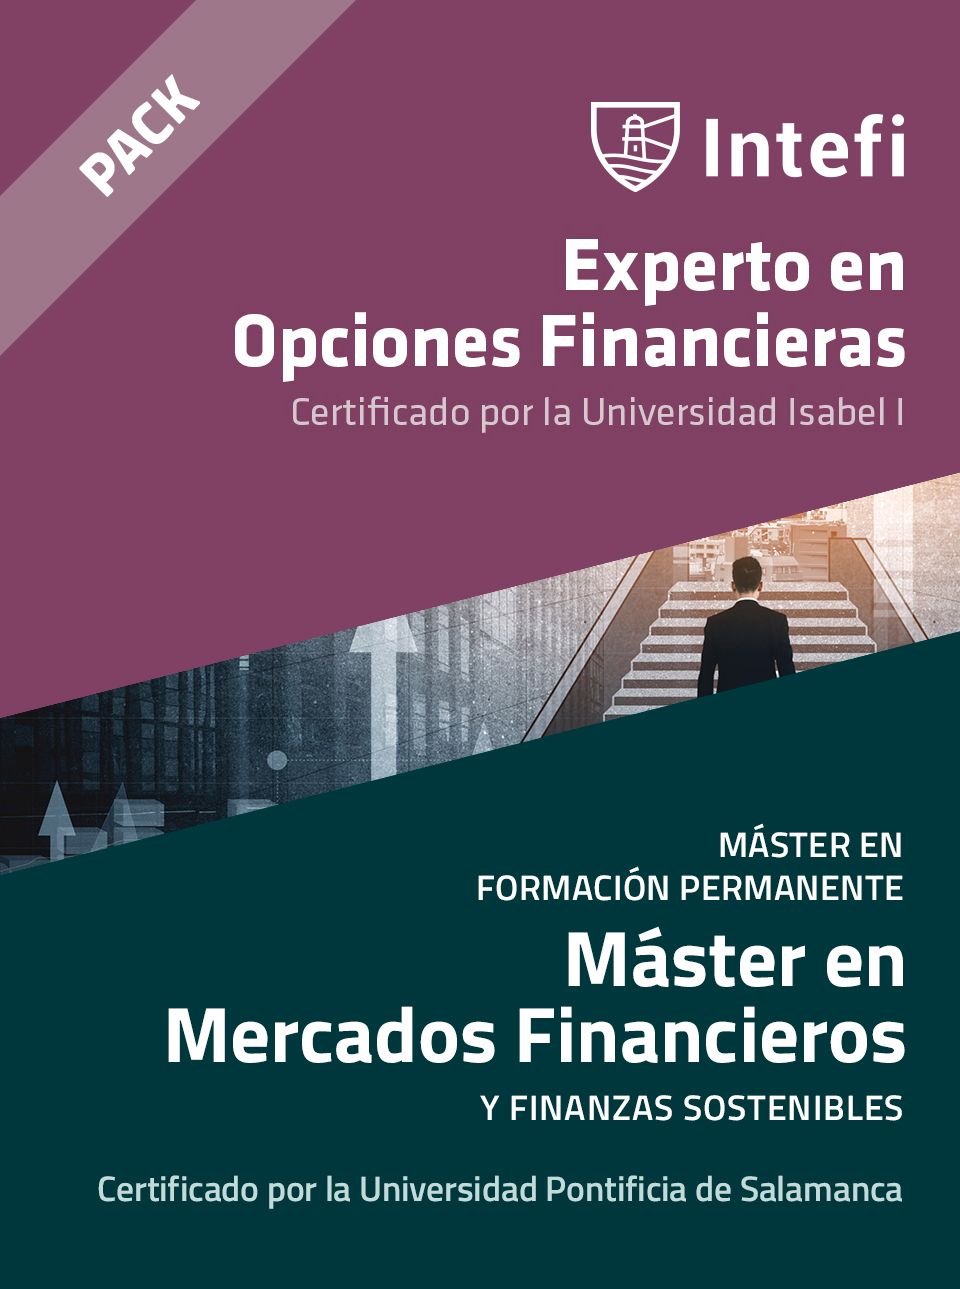 Curso preparatorio para Asesor Financiero